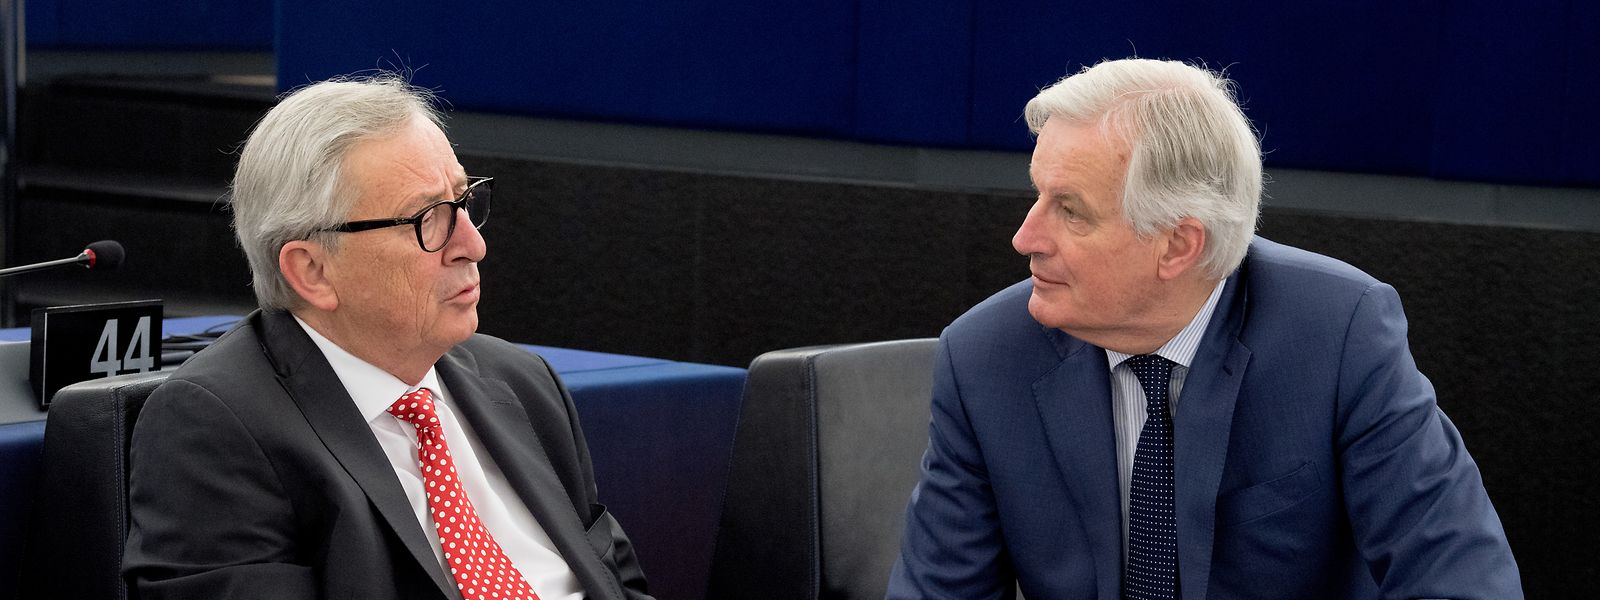  Jean-Claude Juncker im Gespräch mit Michel Barnier, Chefunterhändler der Europäischen Union für den Brexit.